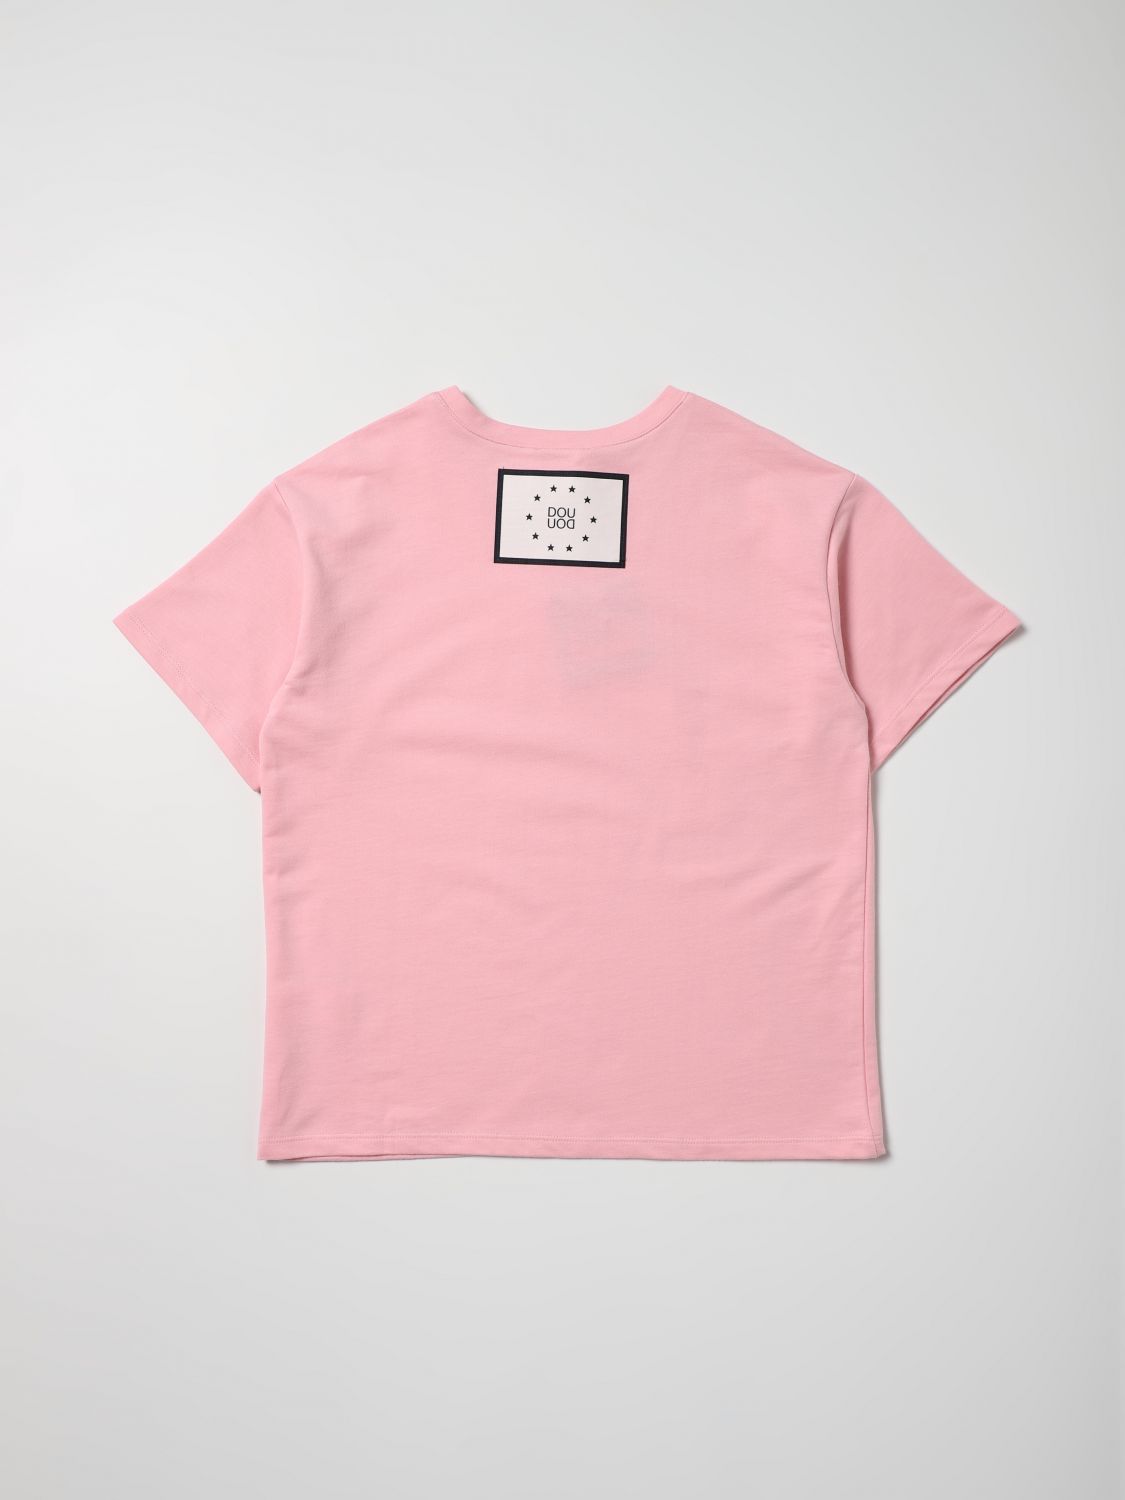 Tシャツ Douuod: Tシャツ Douuod 女の子 ピンク 2